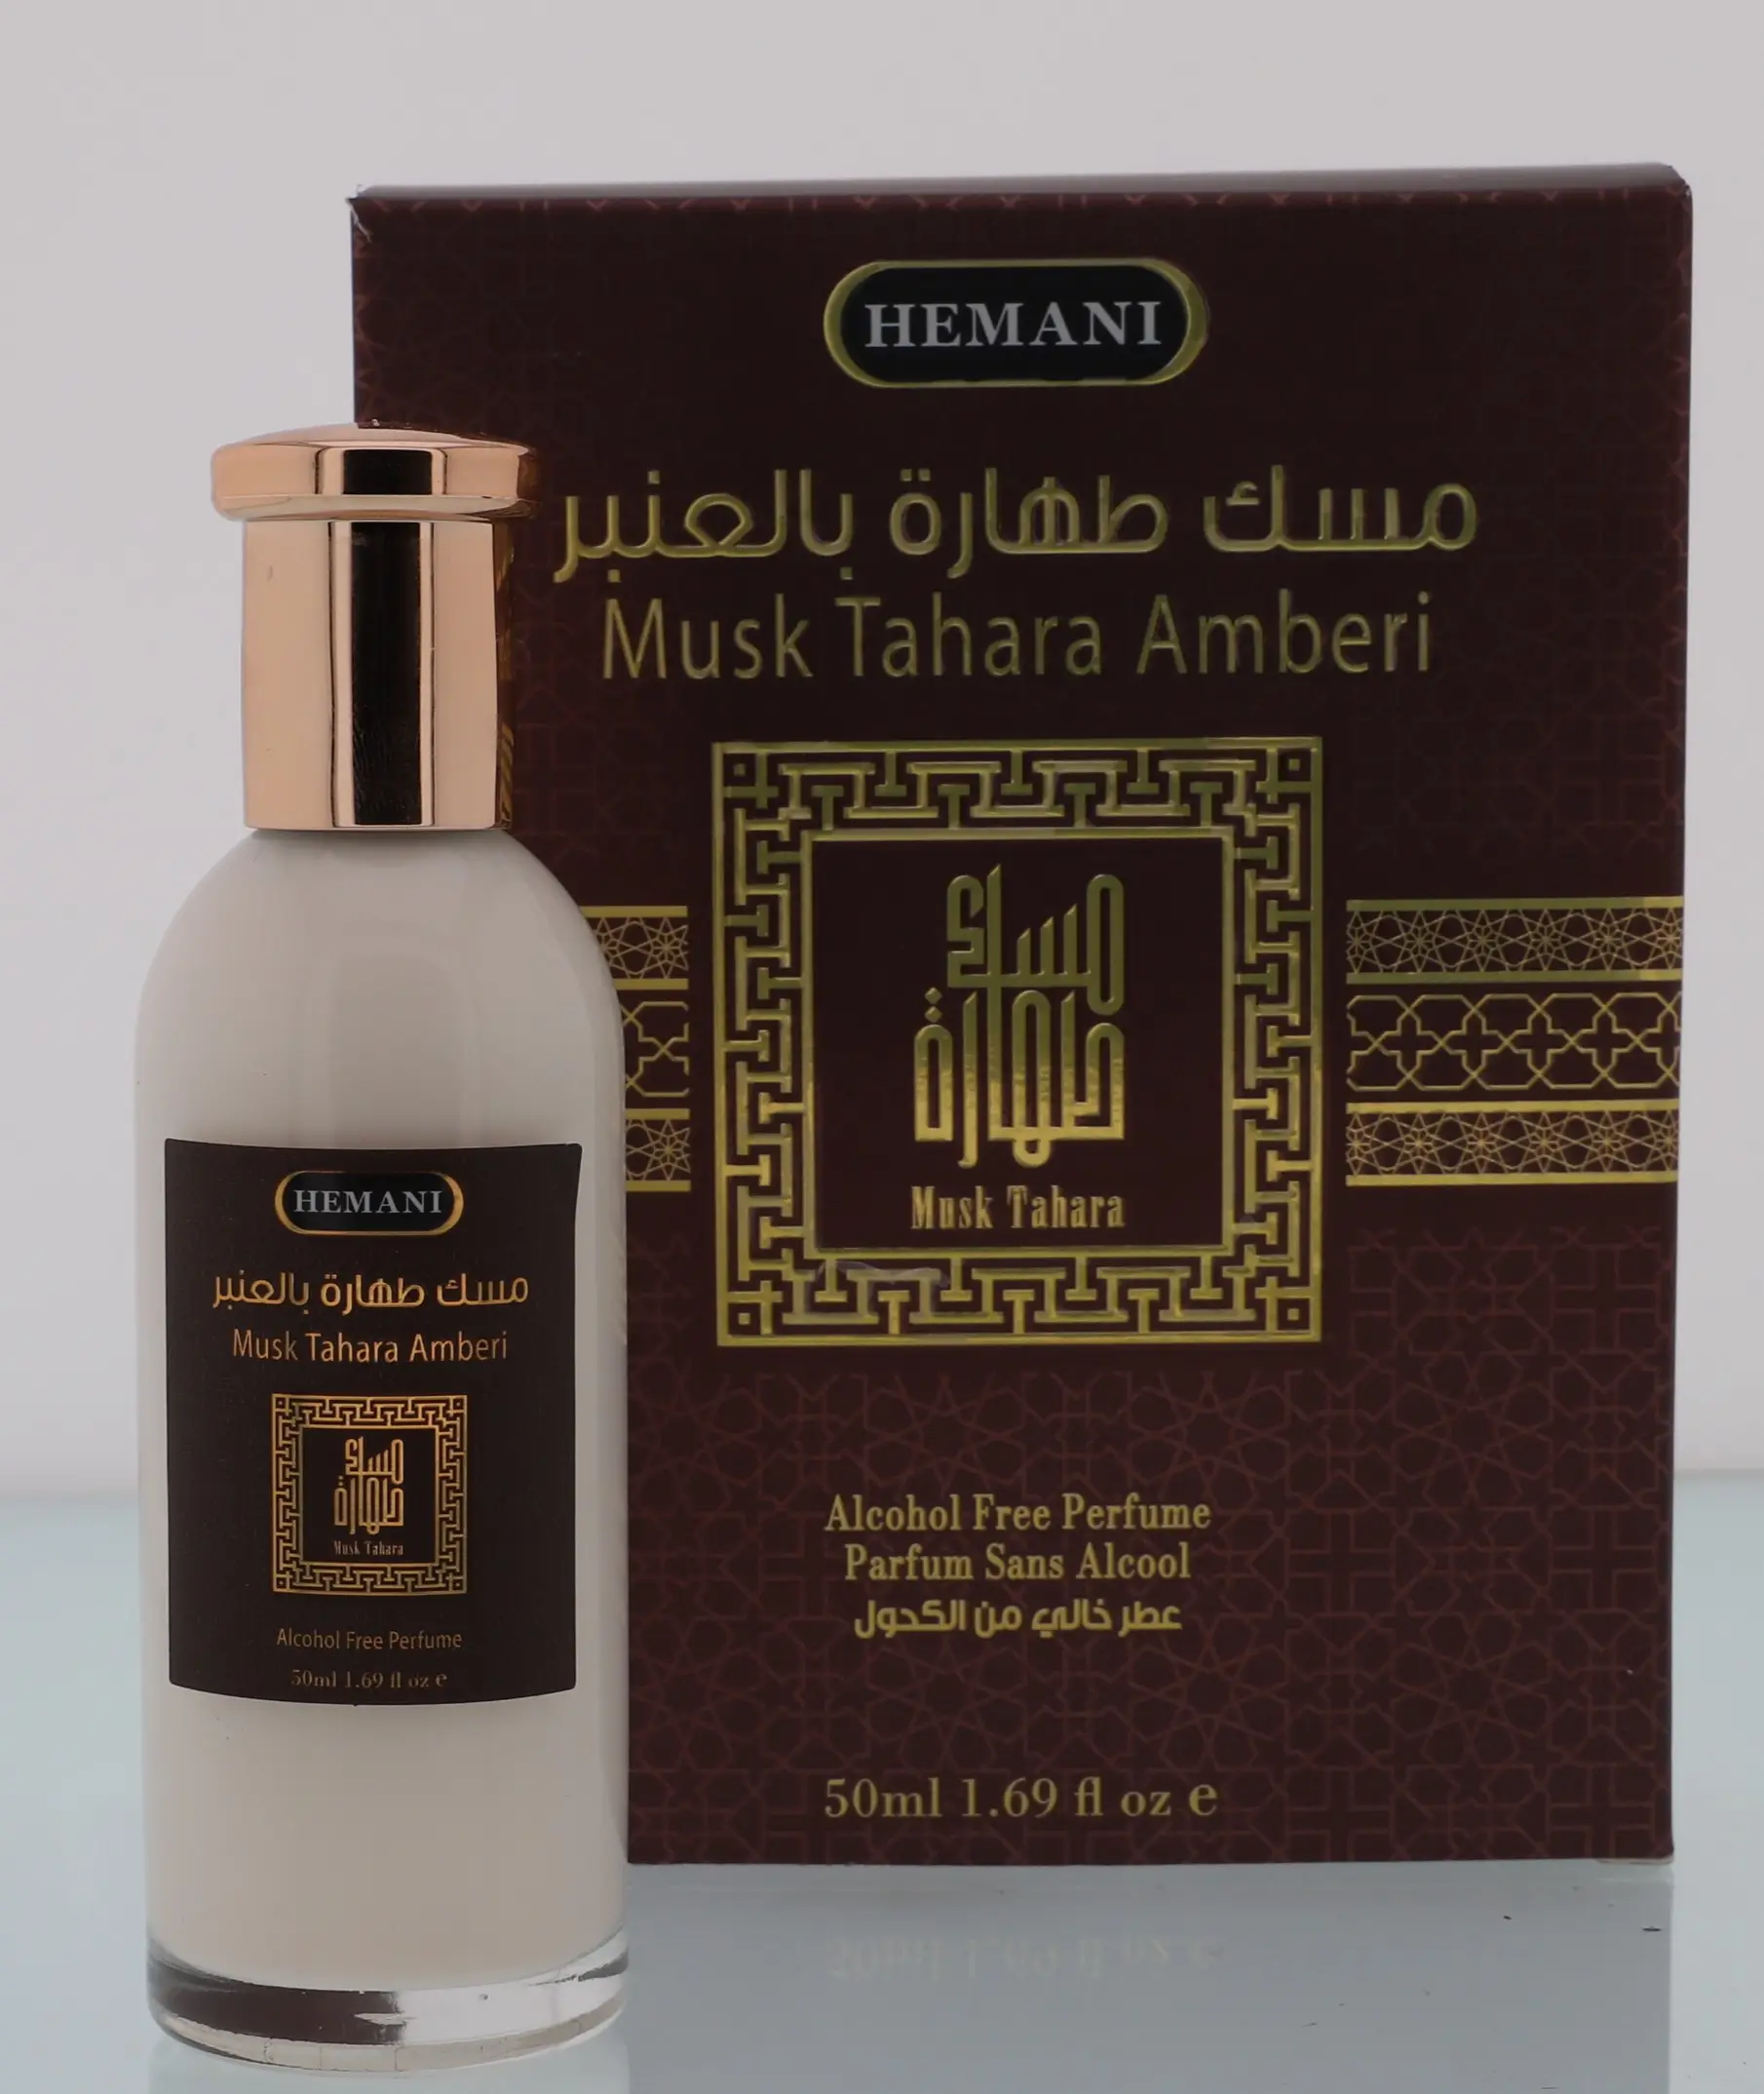 HEMANI Musk Tahara Marken kollektion 50ml Parfüm Alkoholfreies Parfüm für Männer und Frauen Langlebiger Duft Handelsmarke